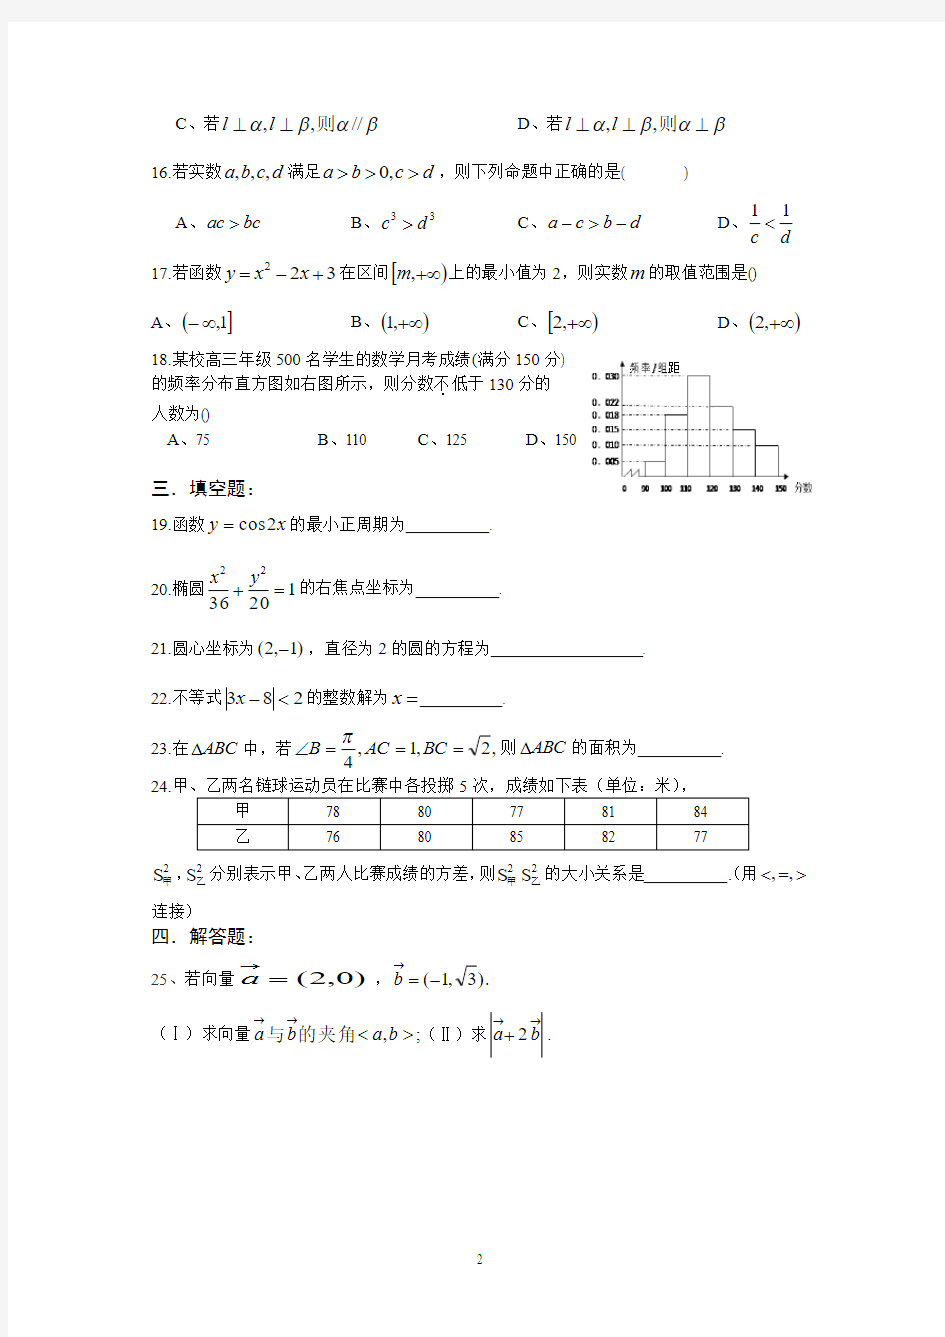 2016年江西省三校生高等职业院校招生统一考试高考数学试题